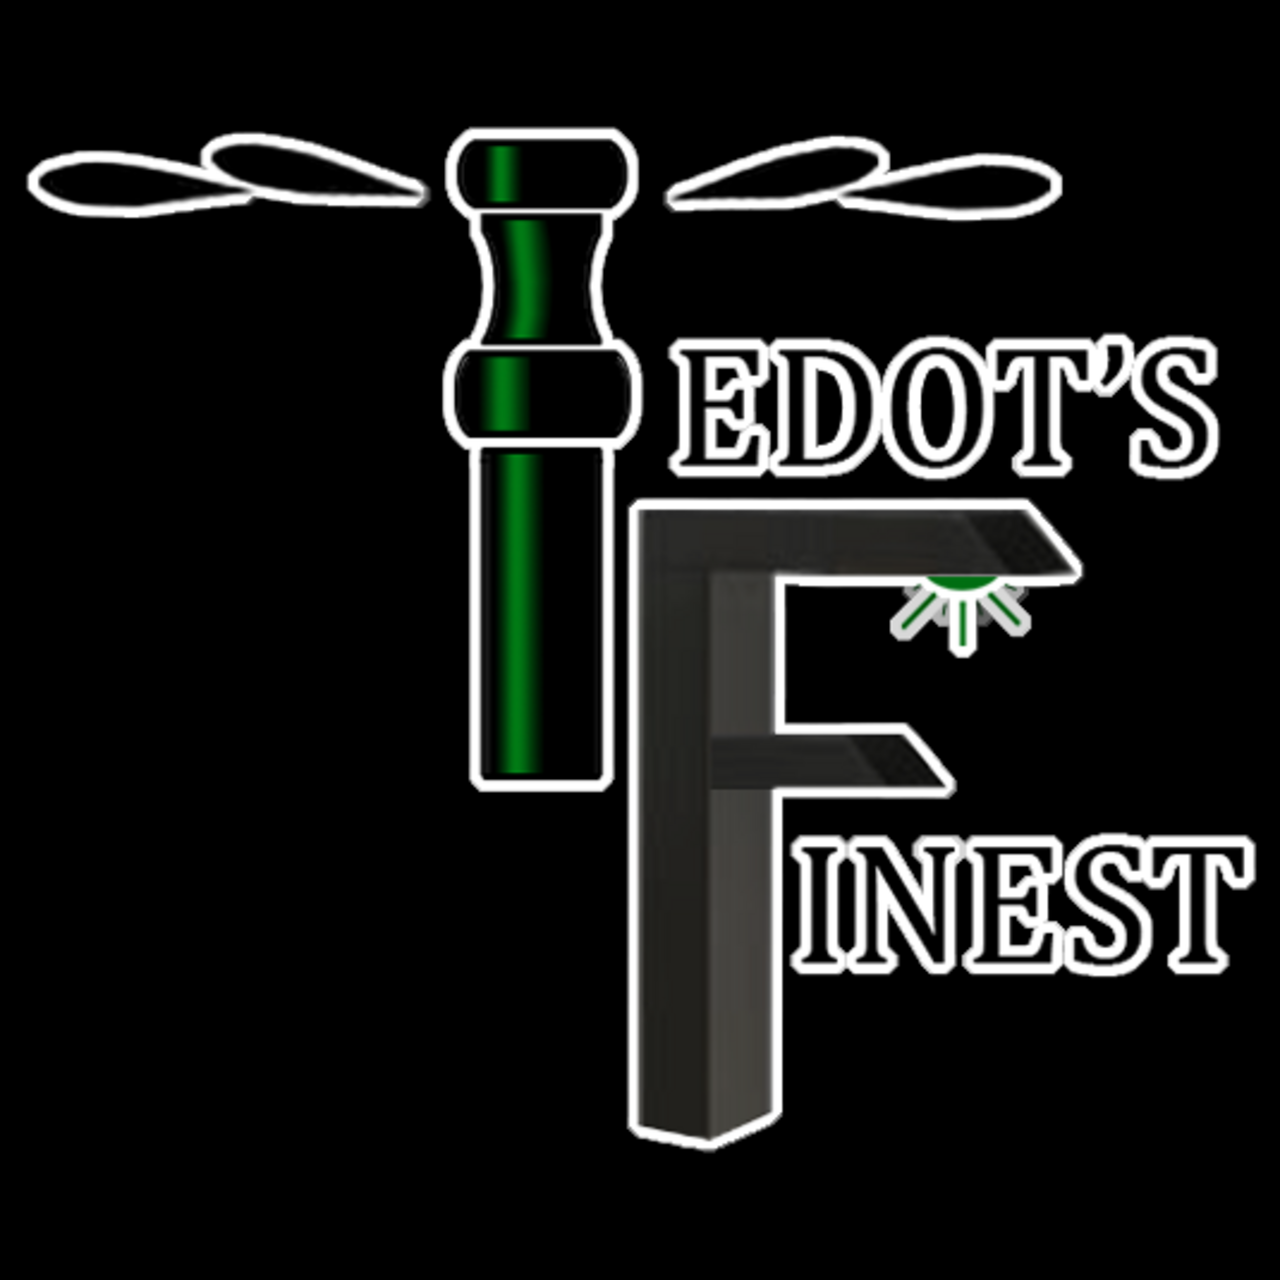 Tedot's Finest Sprinklers and Lighting's logo